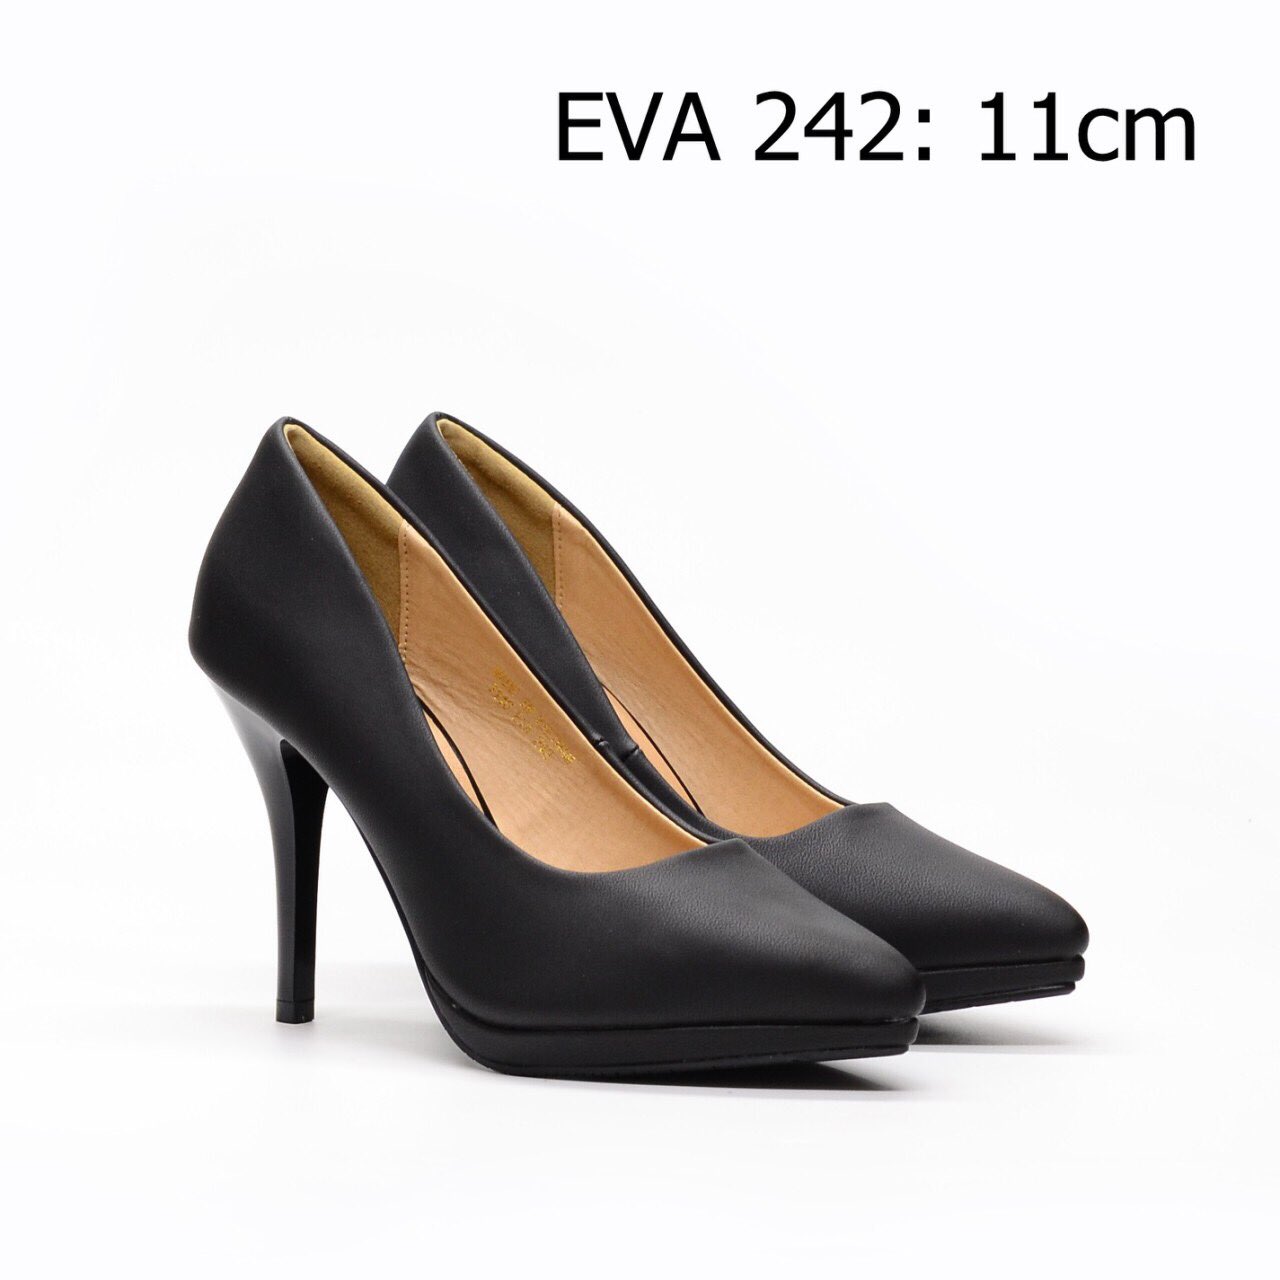 Giày cao gót độn đế EVA242 cao 11 cm cho cô nàng vóc dáng đẹp chuẩn